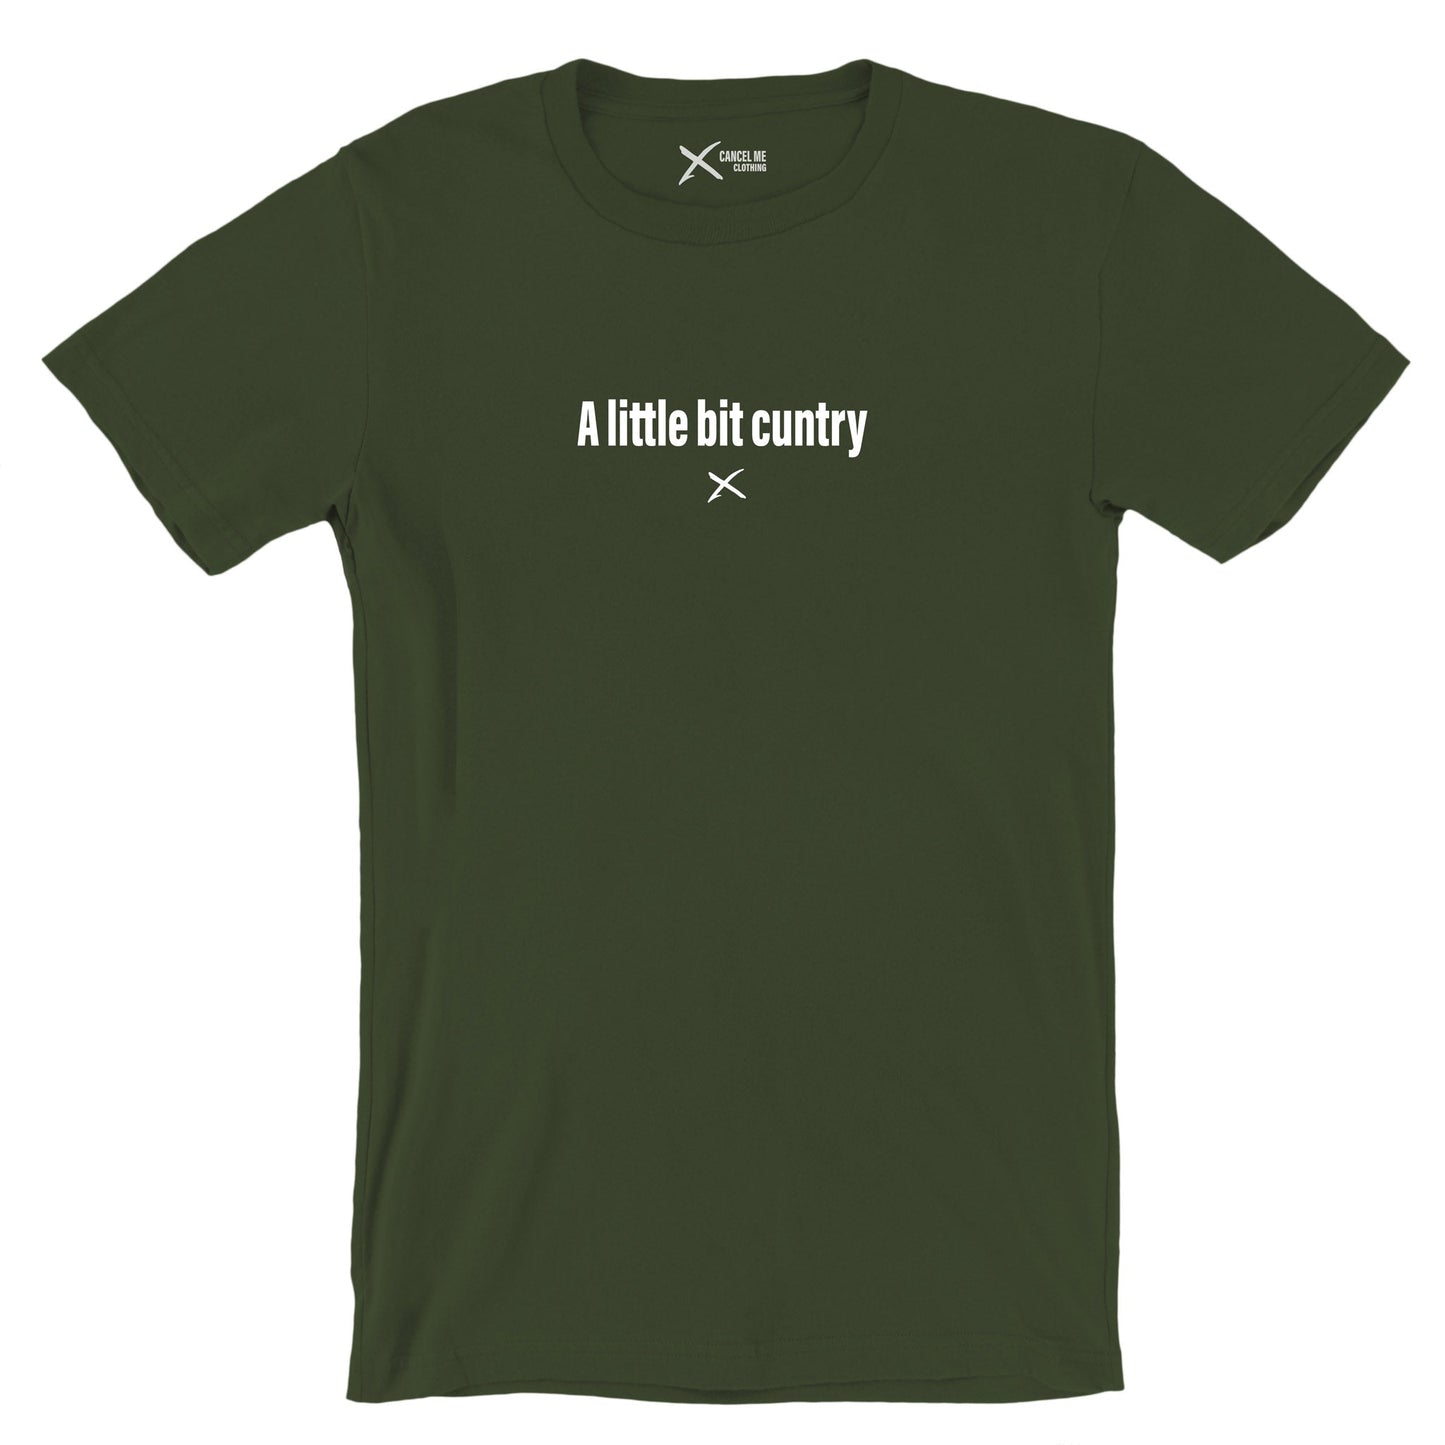 A little bit cuntry - Shirt